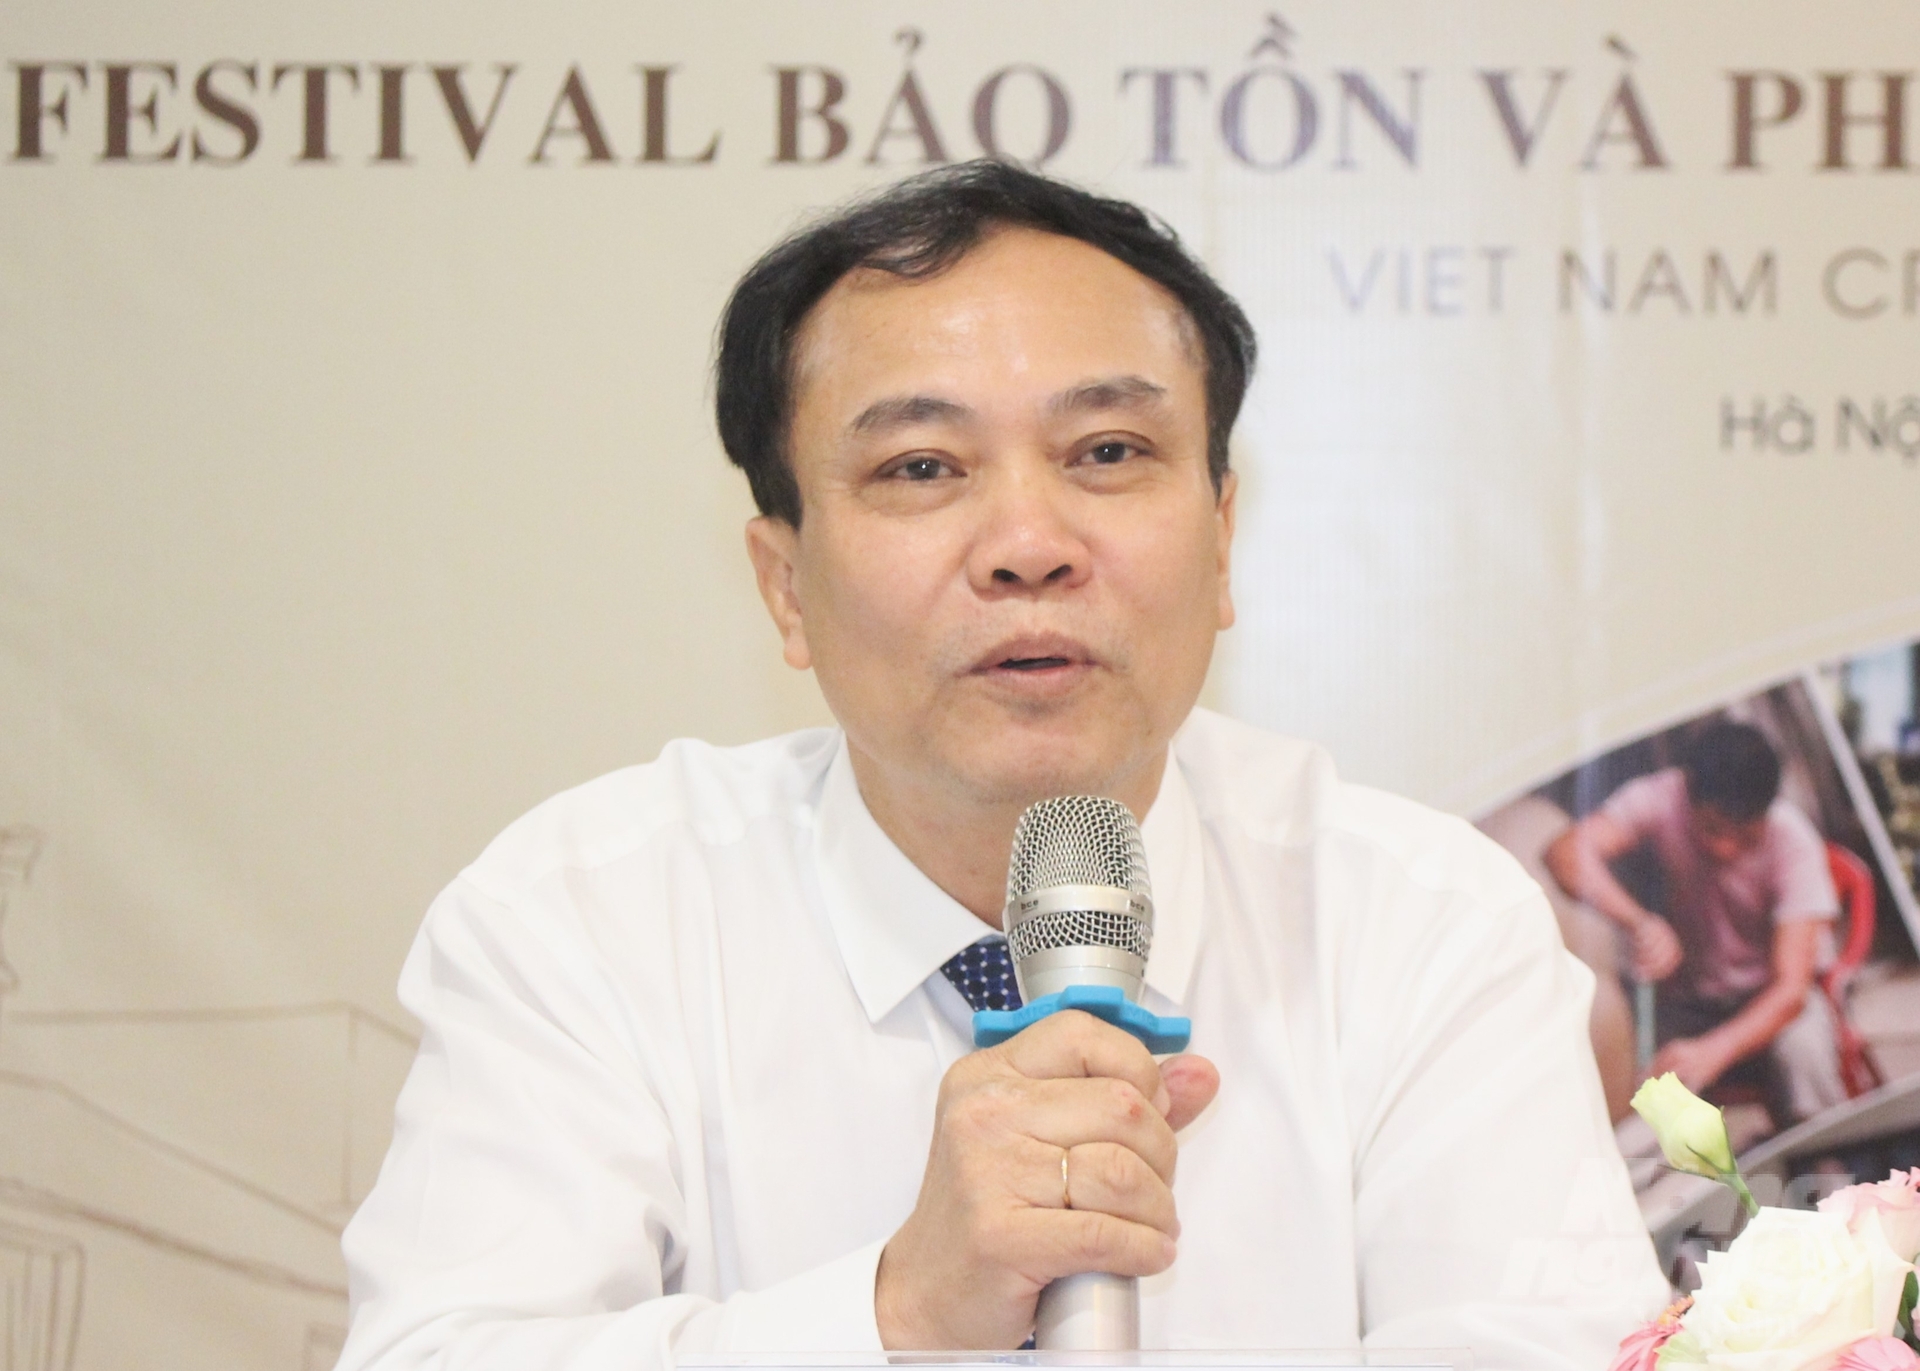 Theo ông Lê Đức Thịnh, Cục trưởng Cục Kinh tế hợp tác và phát triển nông thôn, Festival lần này được tổ chức với nhiều điểm mới, nổi bật. Ảnh: Trung Quân.